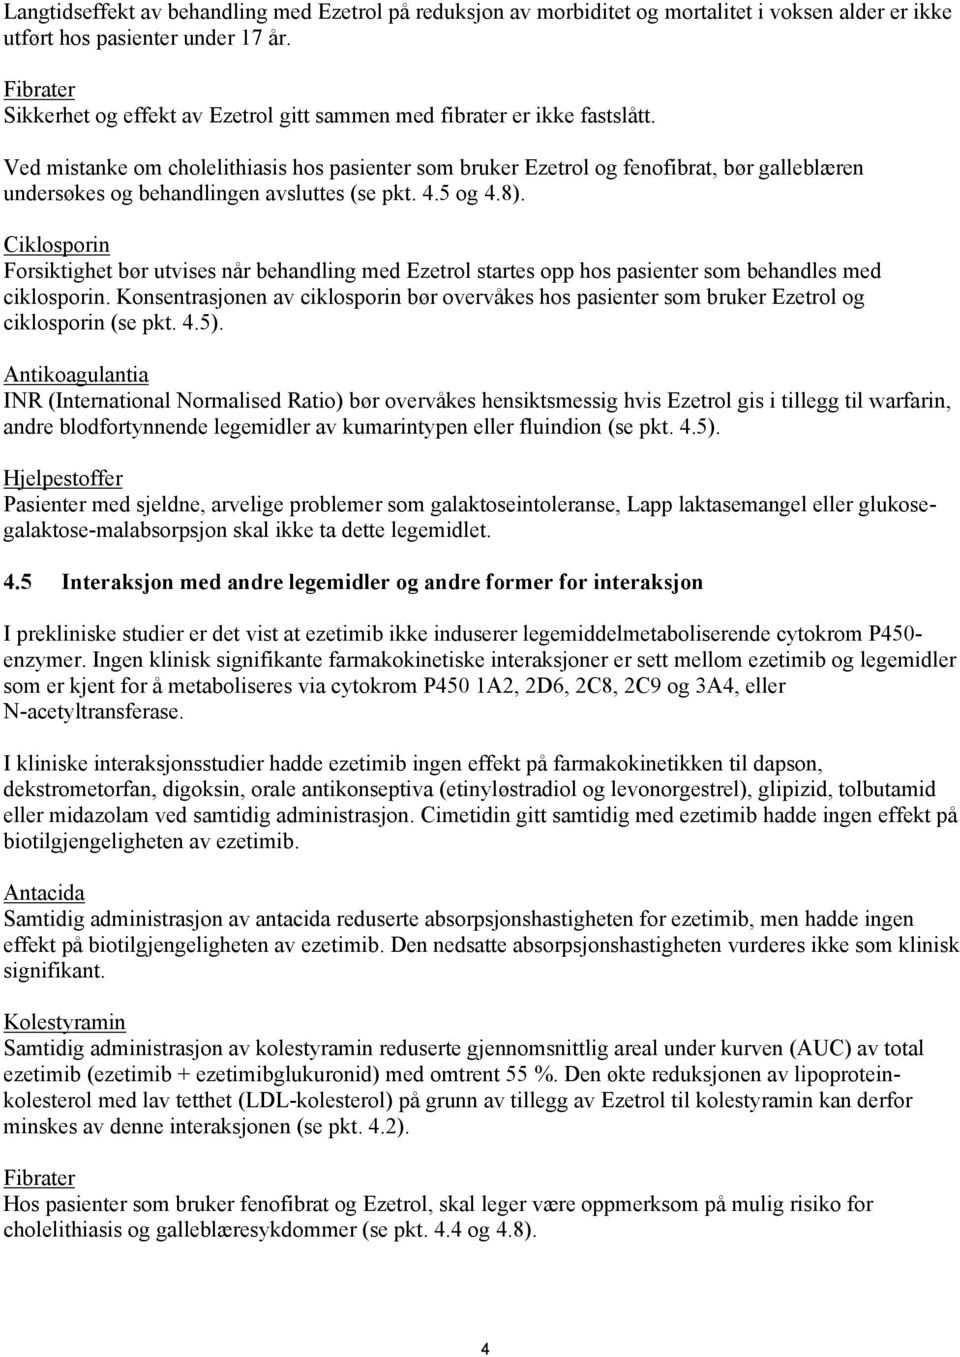 Ved mistanke om cholelithiasis hos pasienter som bruker Ezetrol og fenofibrat, bør galleblæren undersøkes og behandlingen avsluttes (se pkt. 4.5 og 4.8).